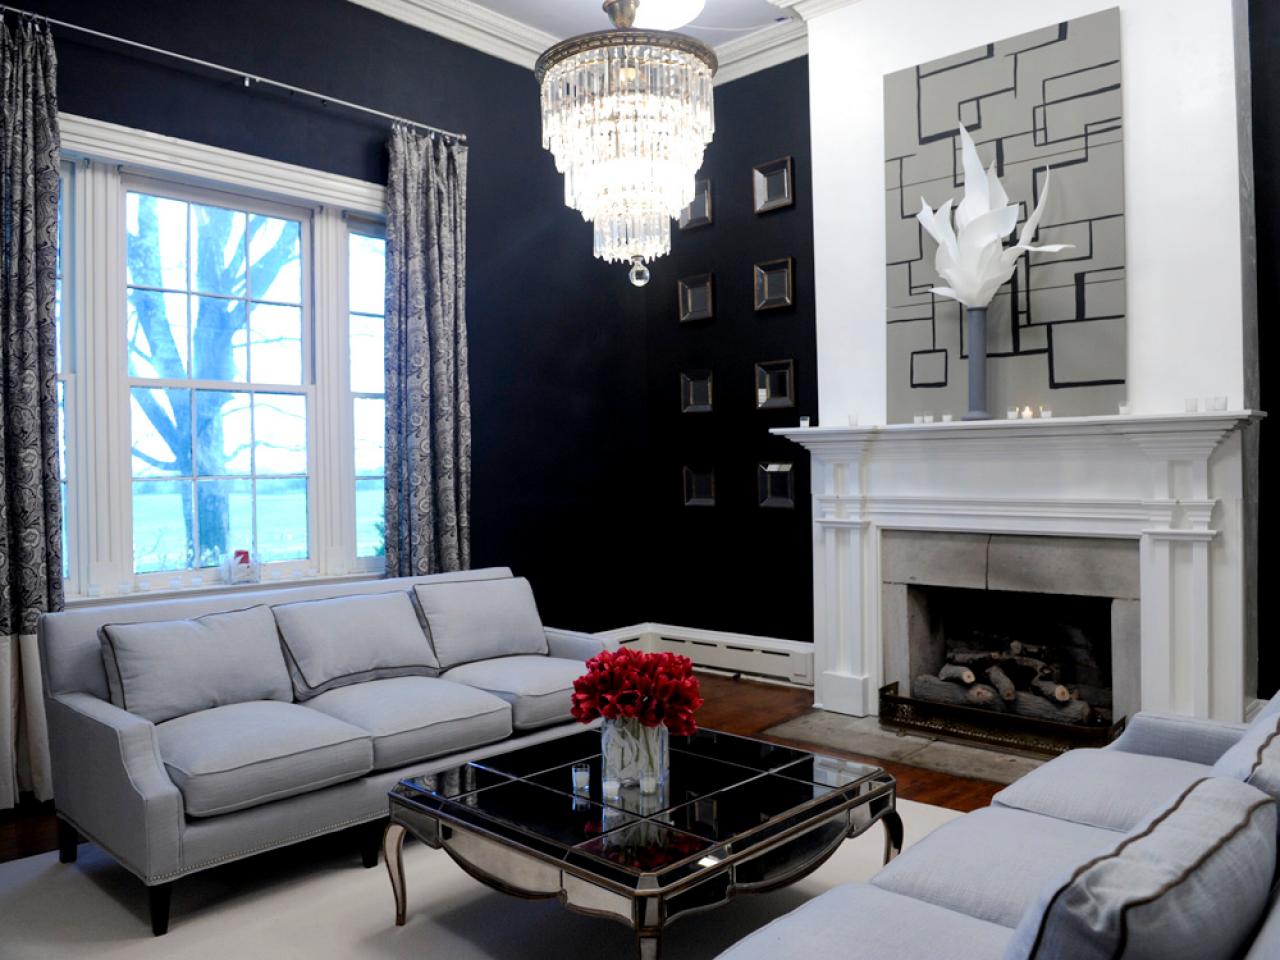 Modern Style for Classic Rooms | HGTV Design Star | HGTV